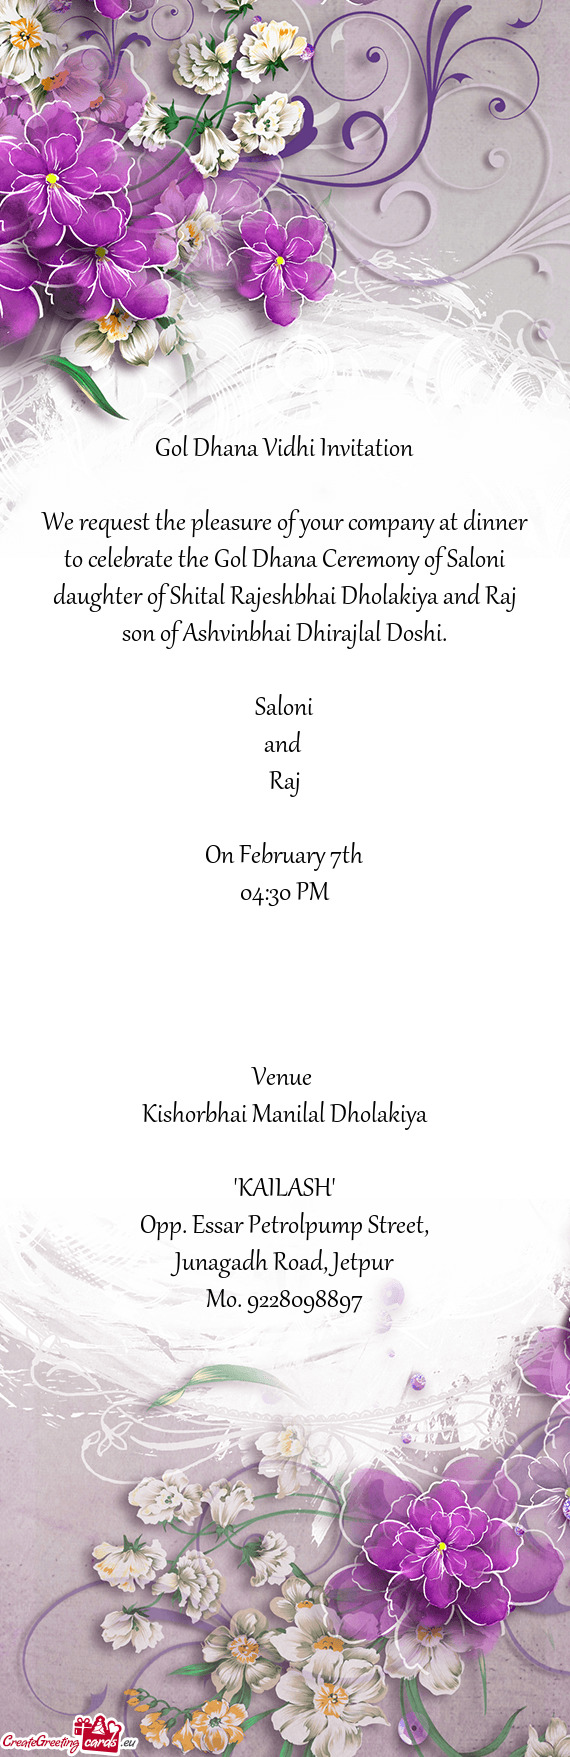 Gol Dhana Vidhi Invitation